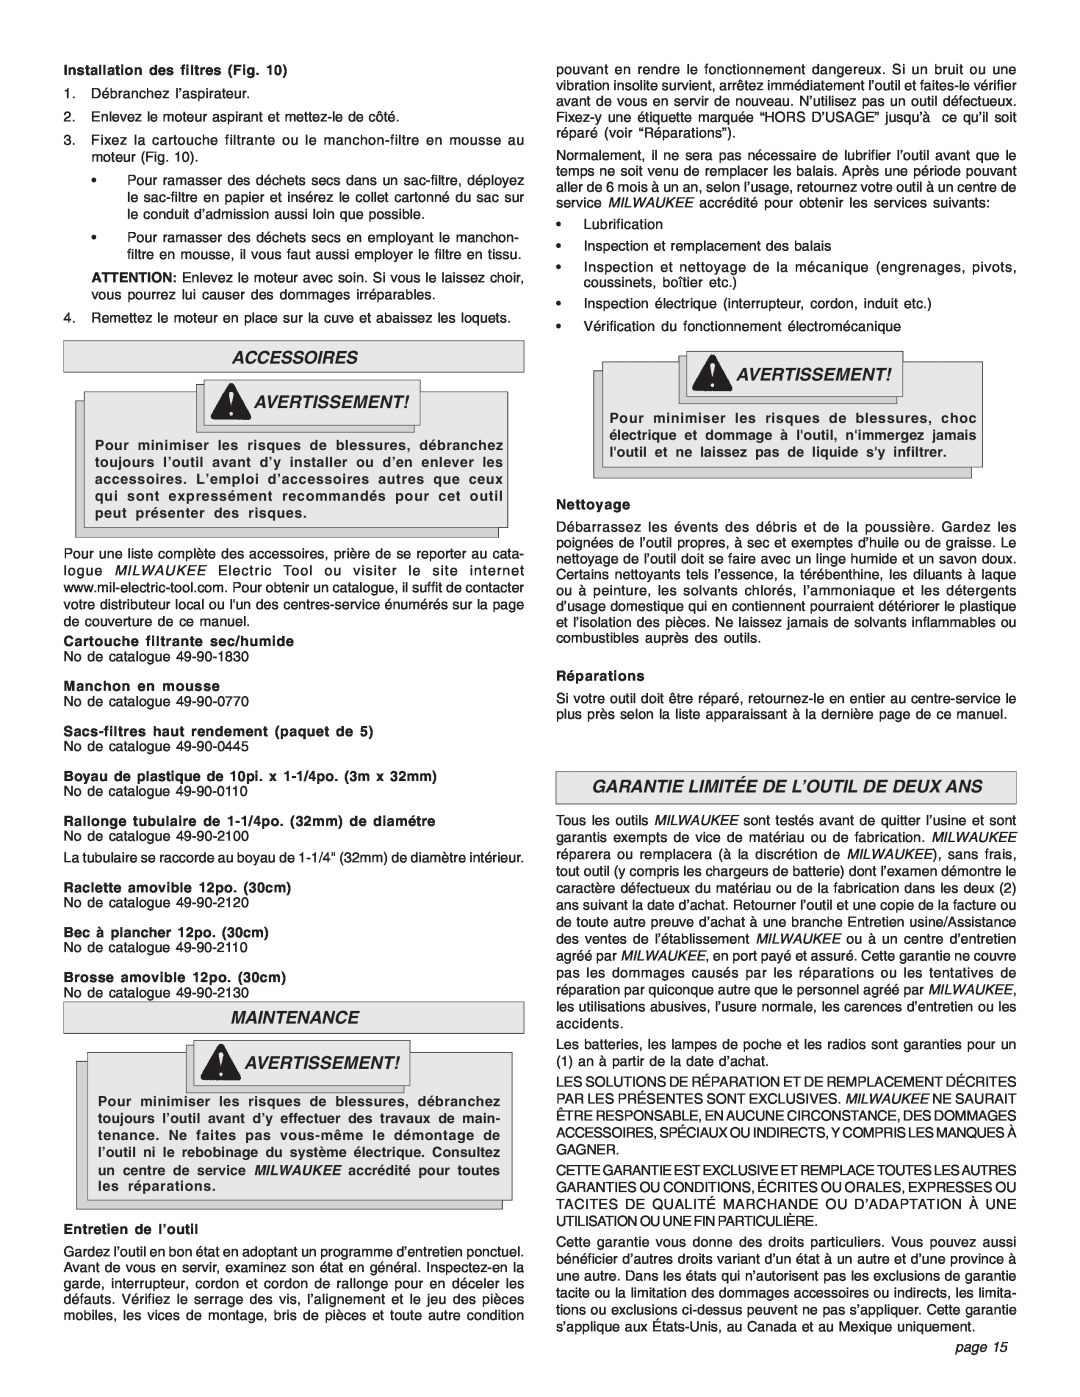 Intec 8940-20 manual Accessoires Avertissement, Maintenance Avertissement, Garantie Limitée De L’Outil De Deux Ans, page 